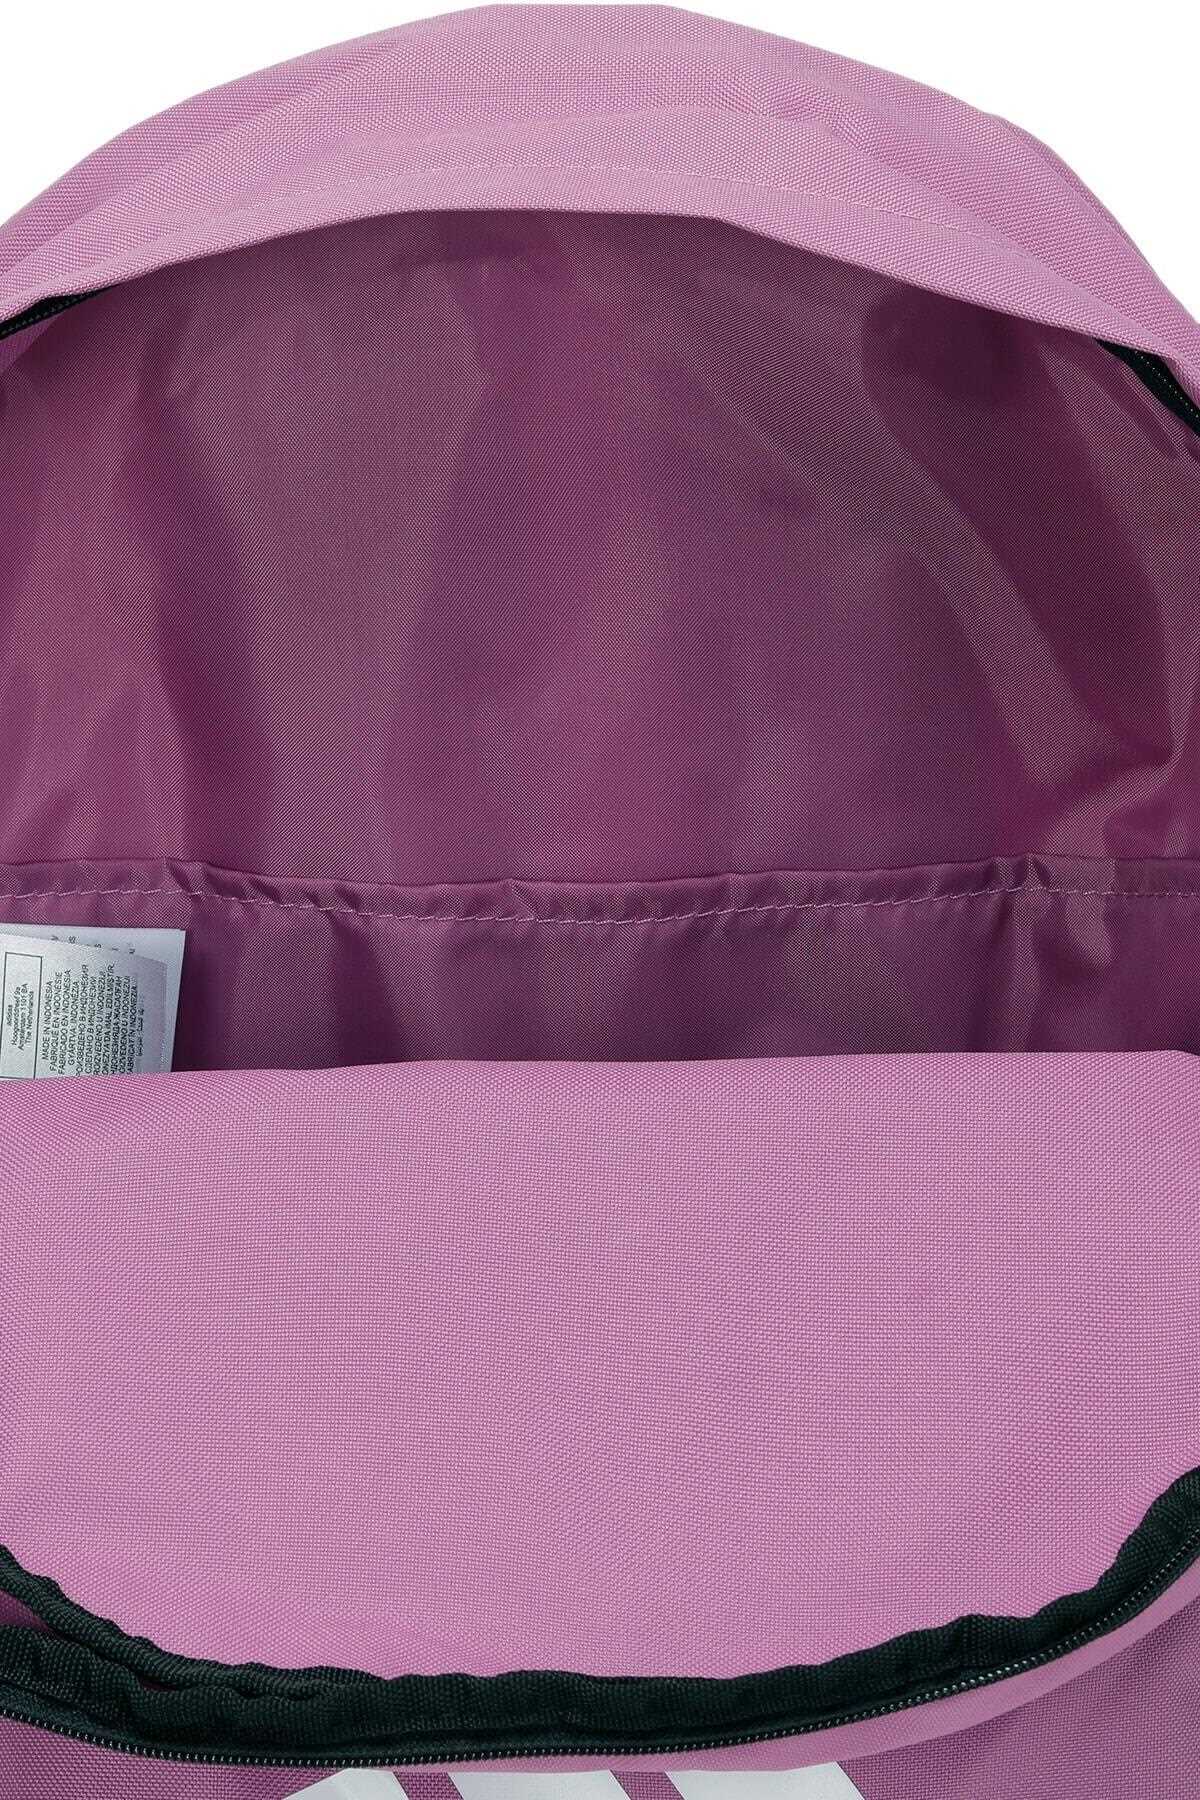 خرید اینترنتی کوله پشتی مردانه شیک شیک آدیداس adidas رنگ صورتی ty334824913